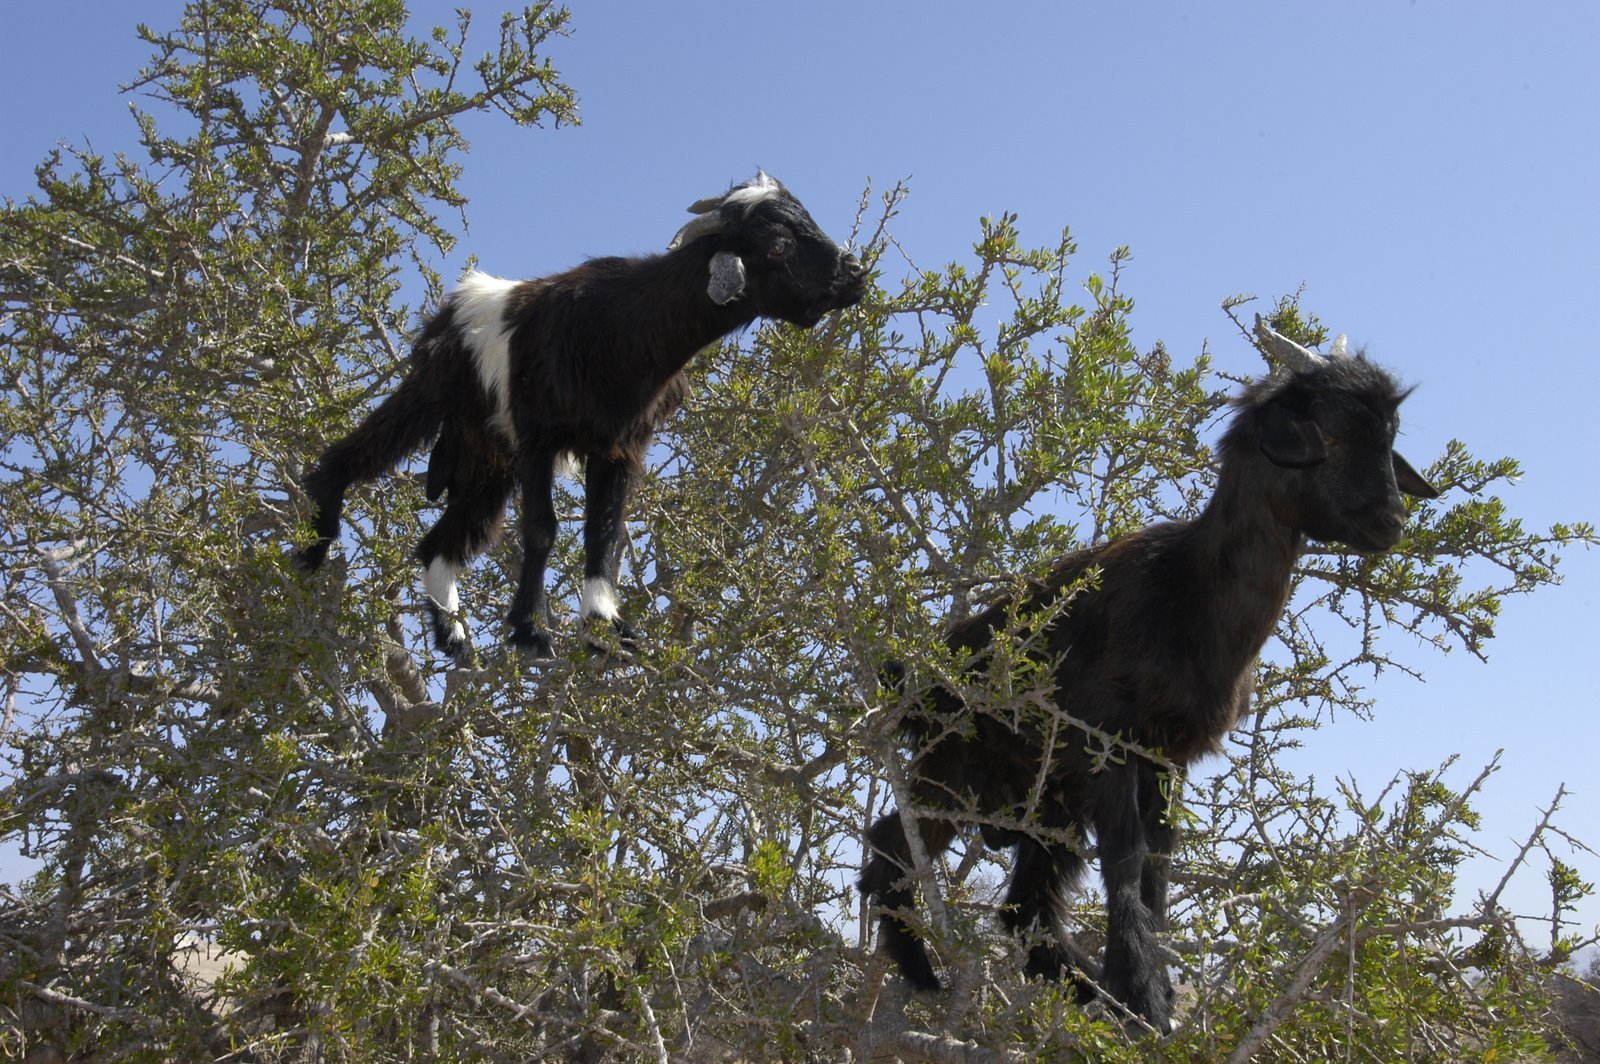 Козочка на небе 7 букв. Козы в Марокко пасутся на деревьях. Марокко древолазные козы. Козы на деревьях в Марокко. Козлы на деревьях в Марокко.